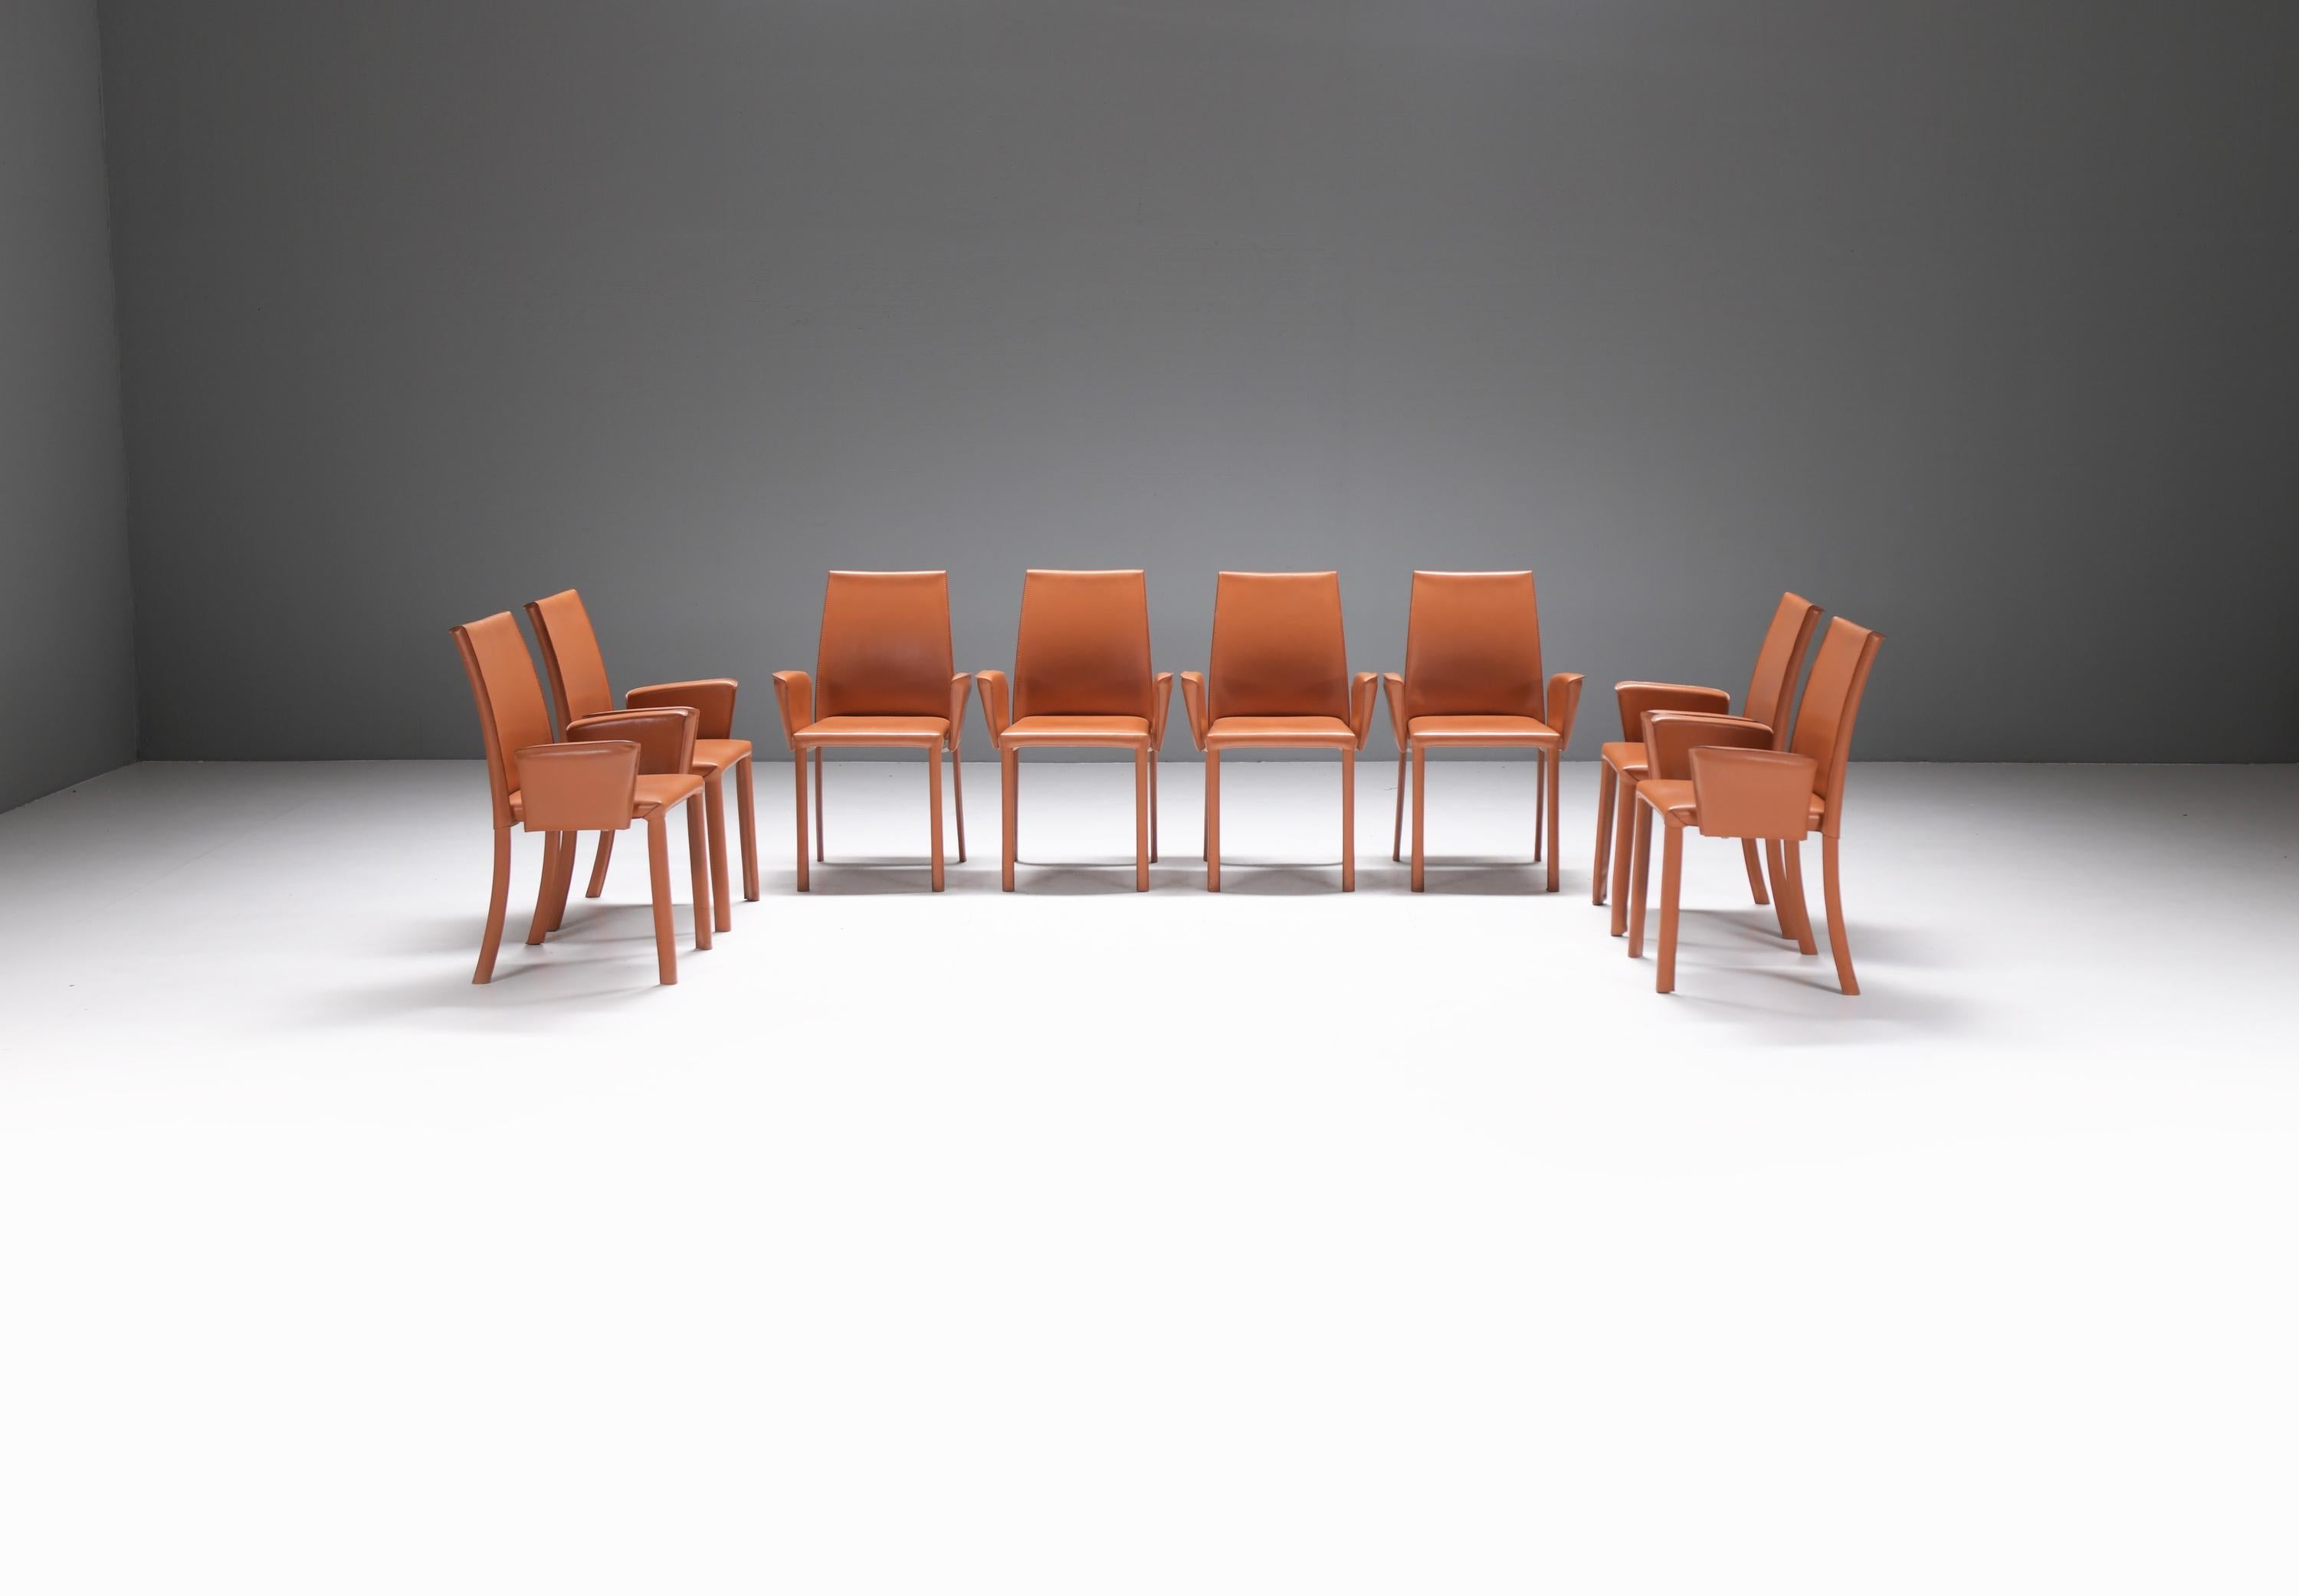 Elegante und bequeme Bottega-Sessel aus cognacfarbenem/orangefarbenem Leder.
Entworfen von Renzo Fauciglietti und Graziella Bianchi für FRAG Italy im Jahr 2003

Die Rahmenstruktur besteht aus einem harmonischen Stahlblechrücken, der sich mit Ihnen